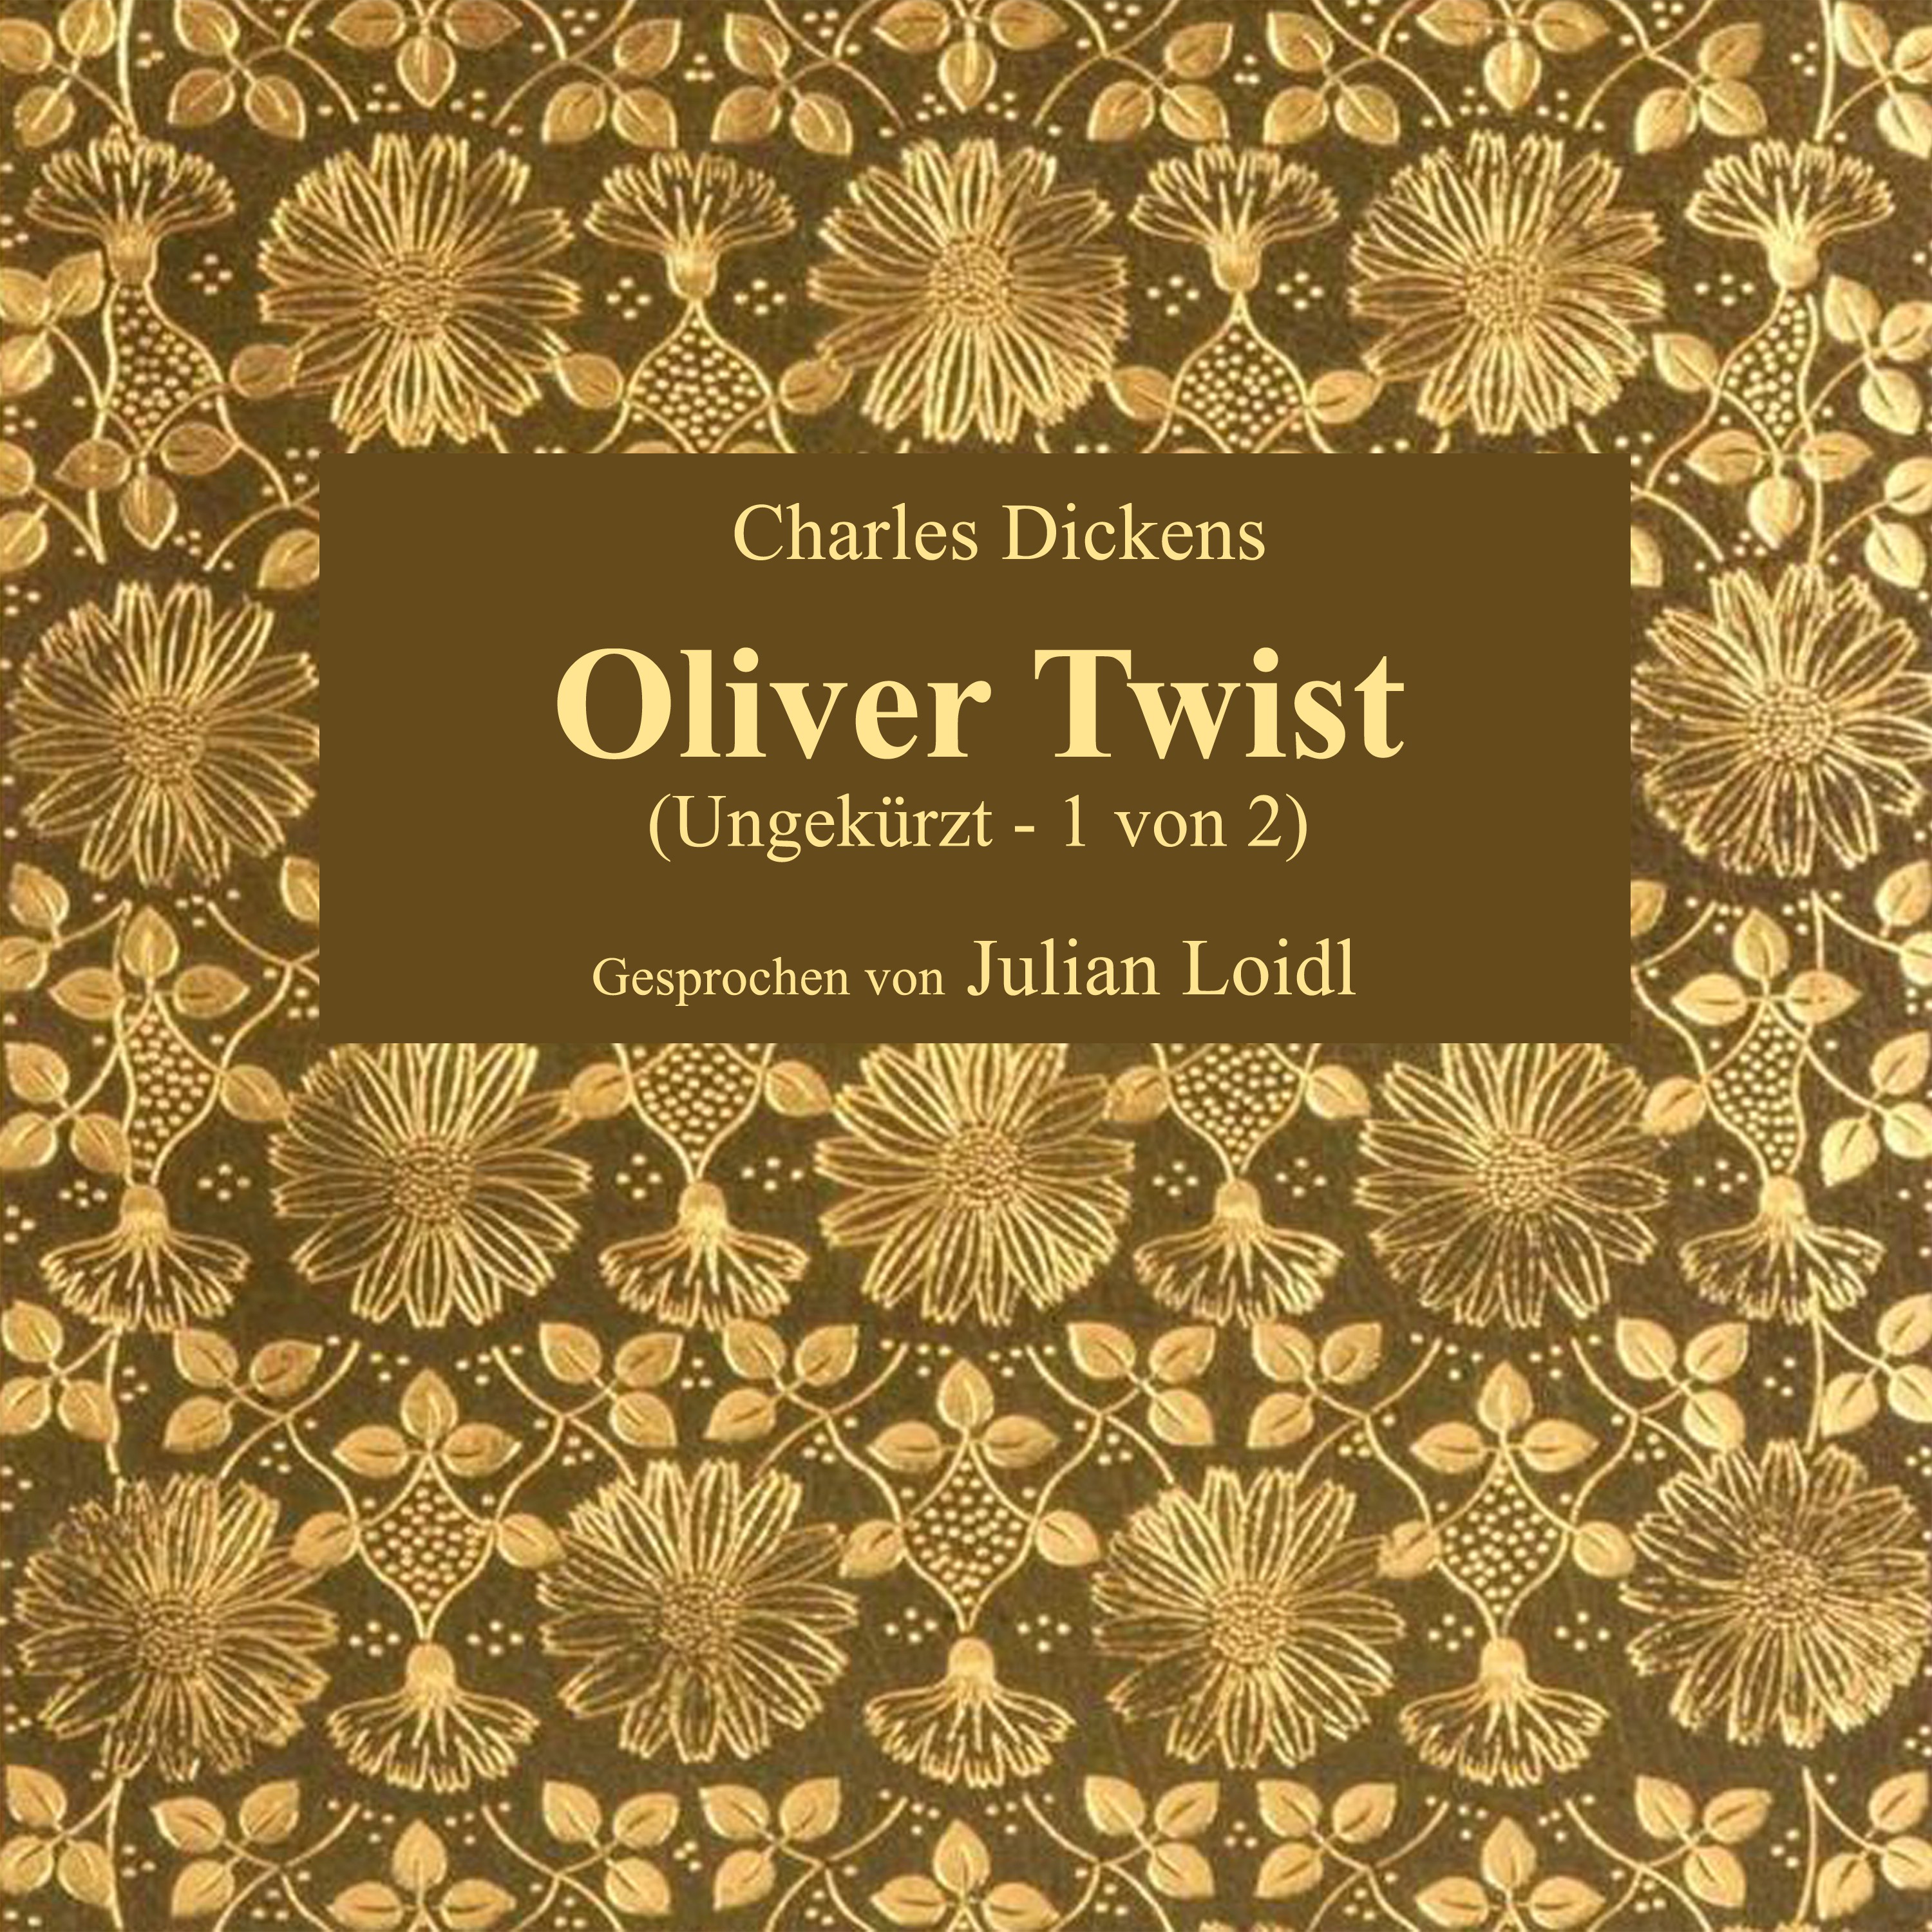 Kapitel 24: Oliver Twist (Teil 6)